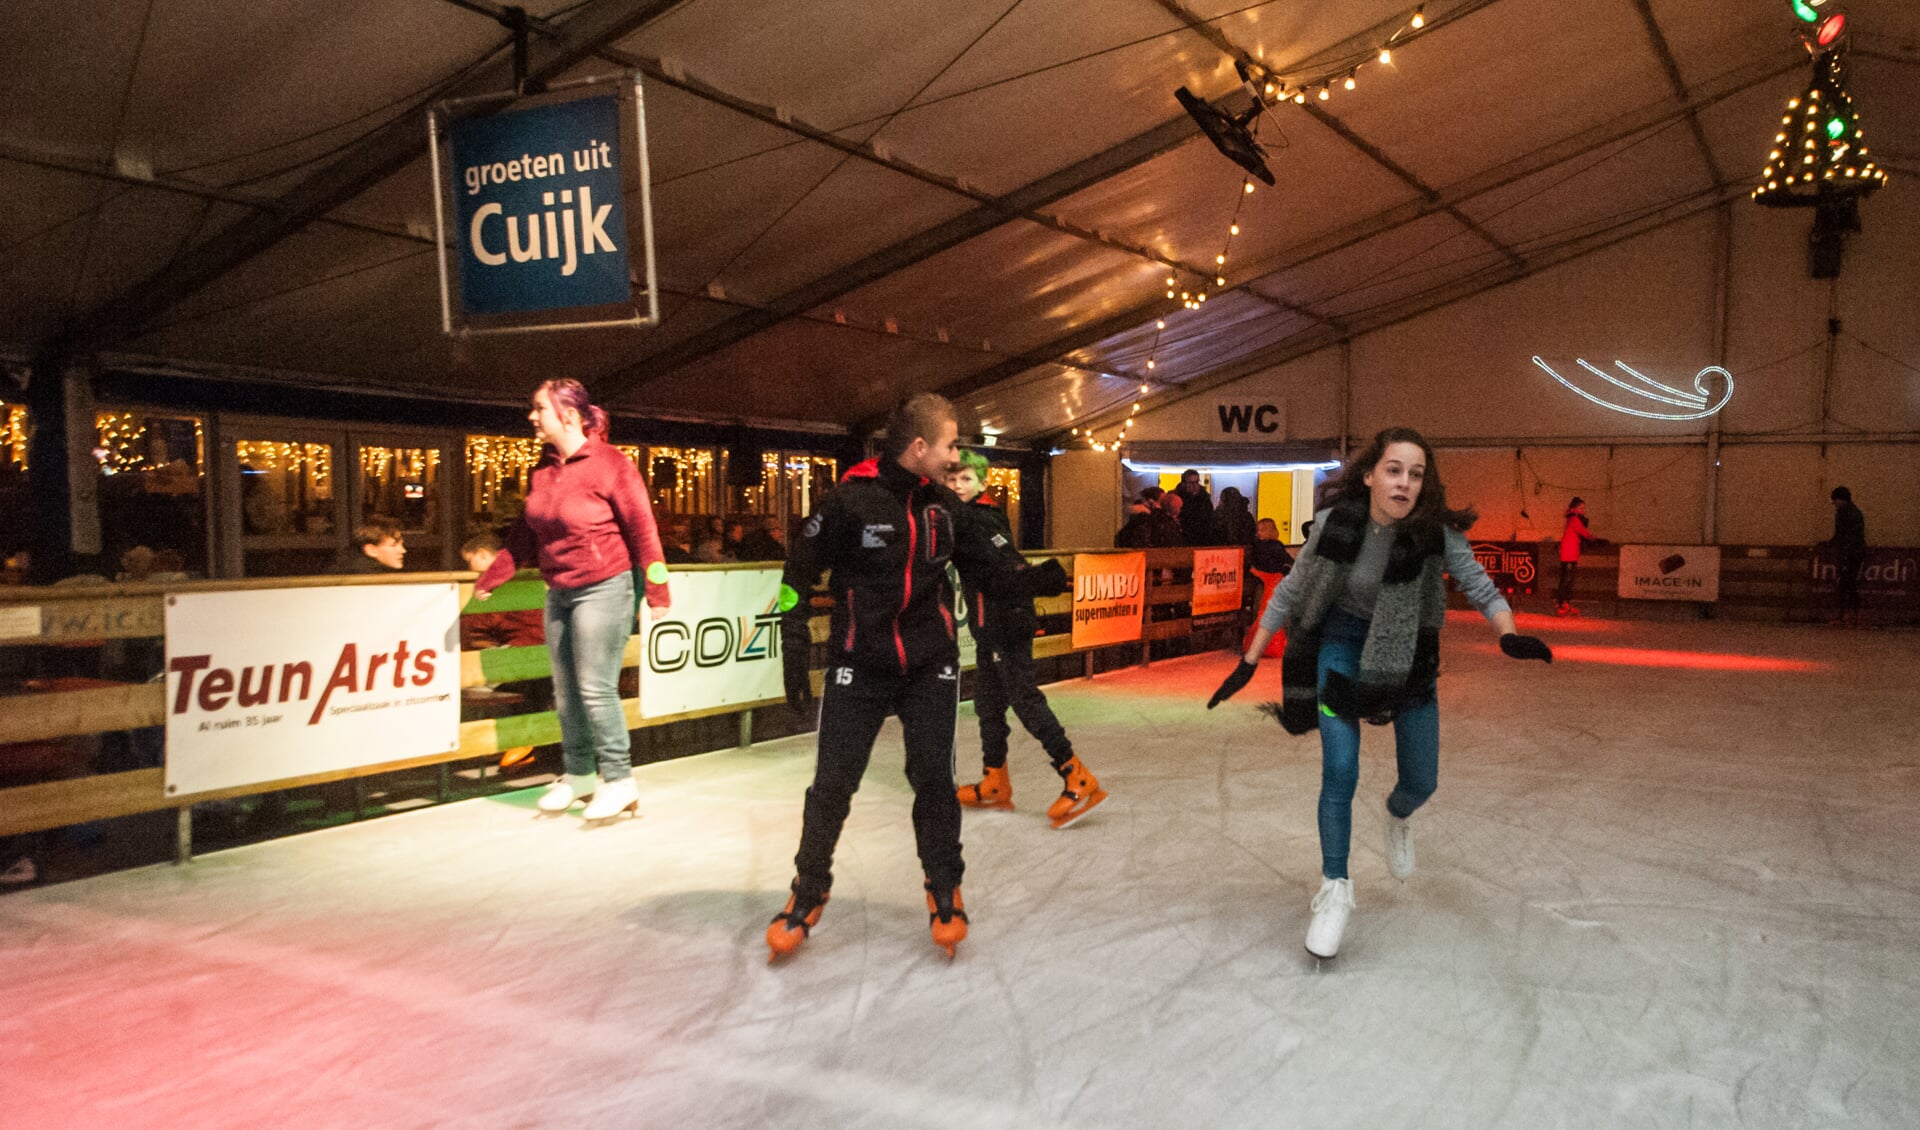 Cuijk on Ice, van zaterdag 7 december tot en met zondag 5 januari. (archieffoto: Arjan Broekmans)